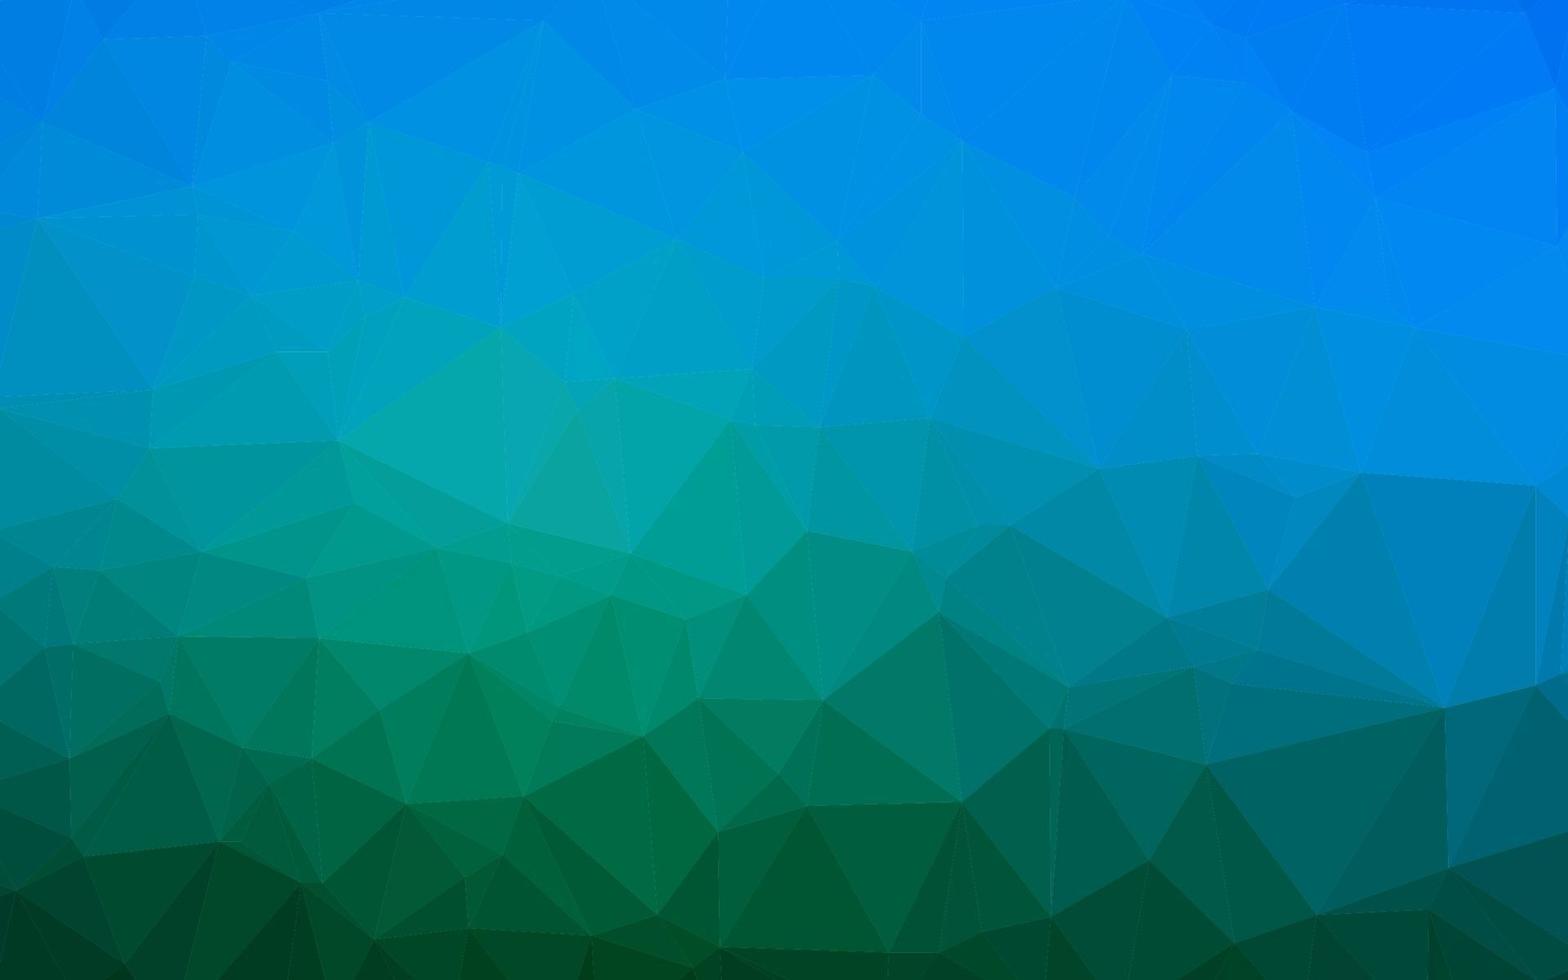 mörkblå, grön vektor polygonal bakgrund.